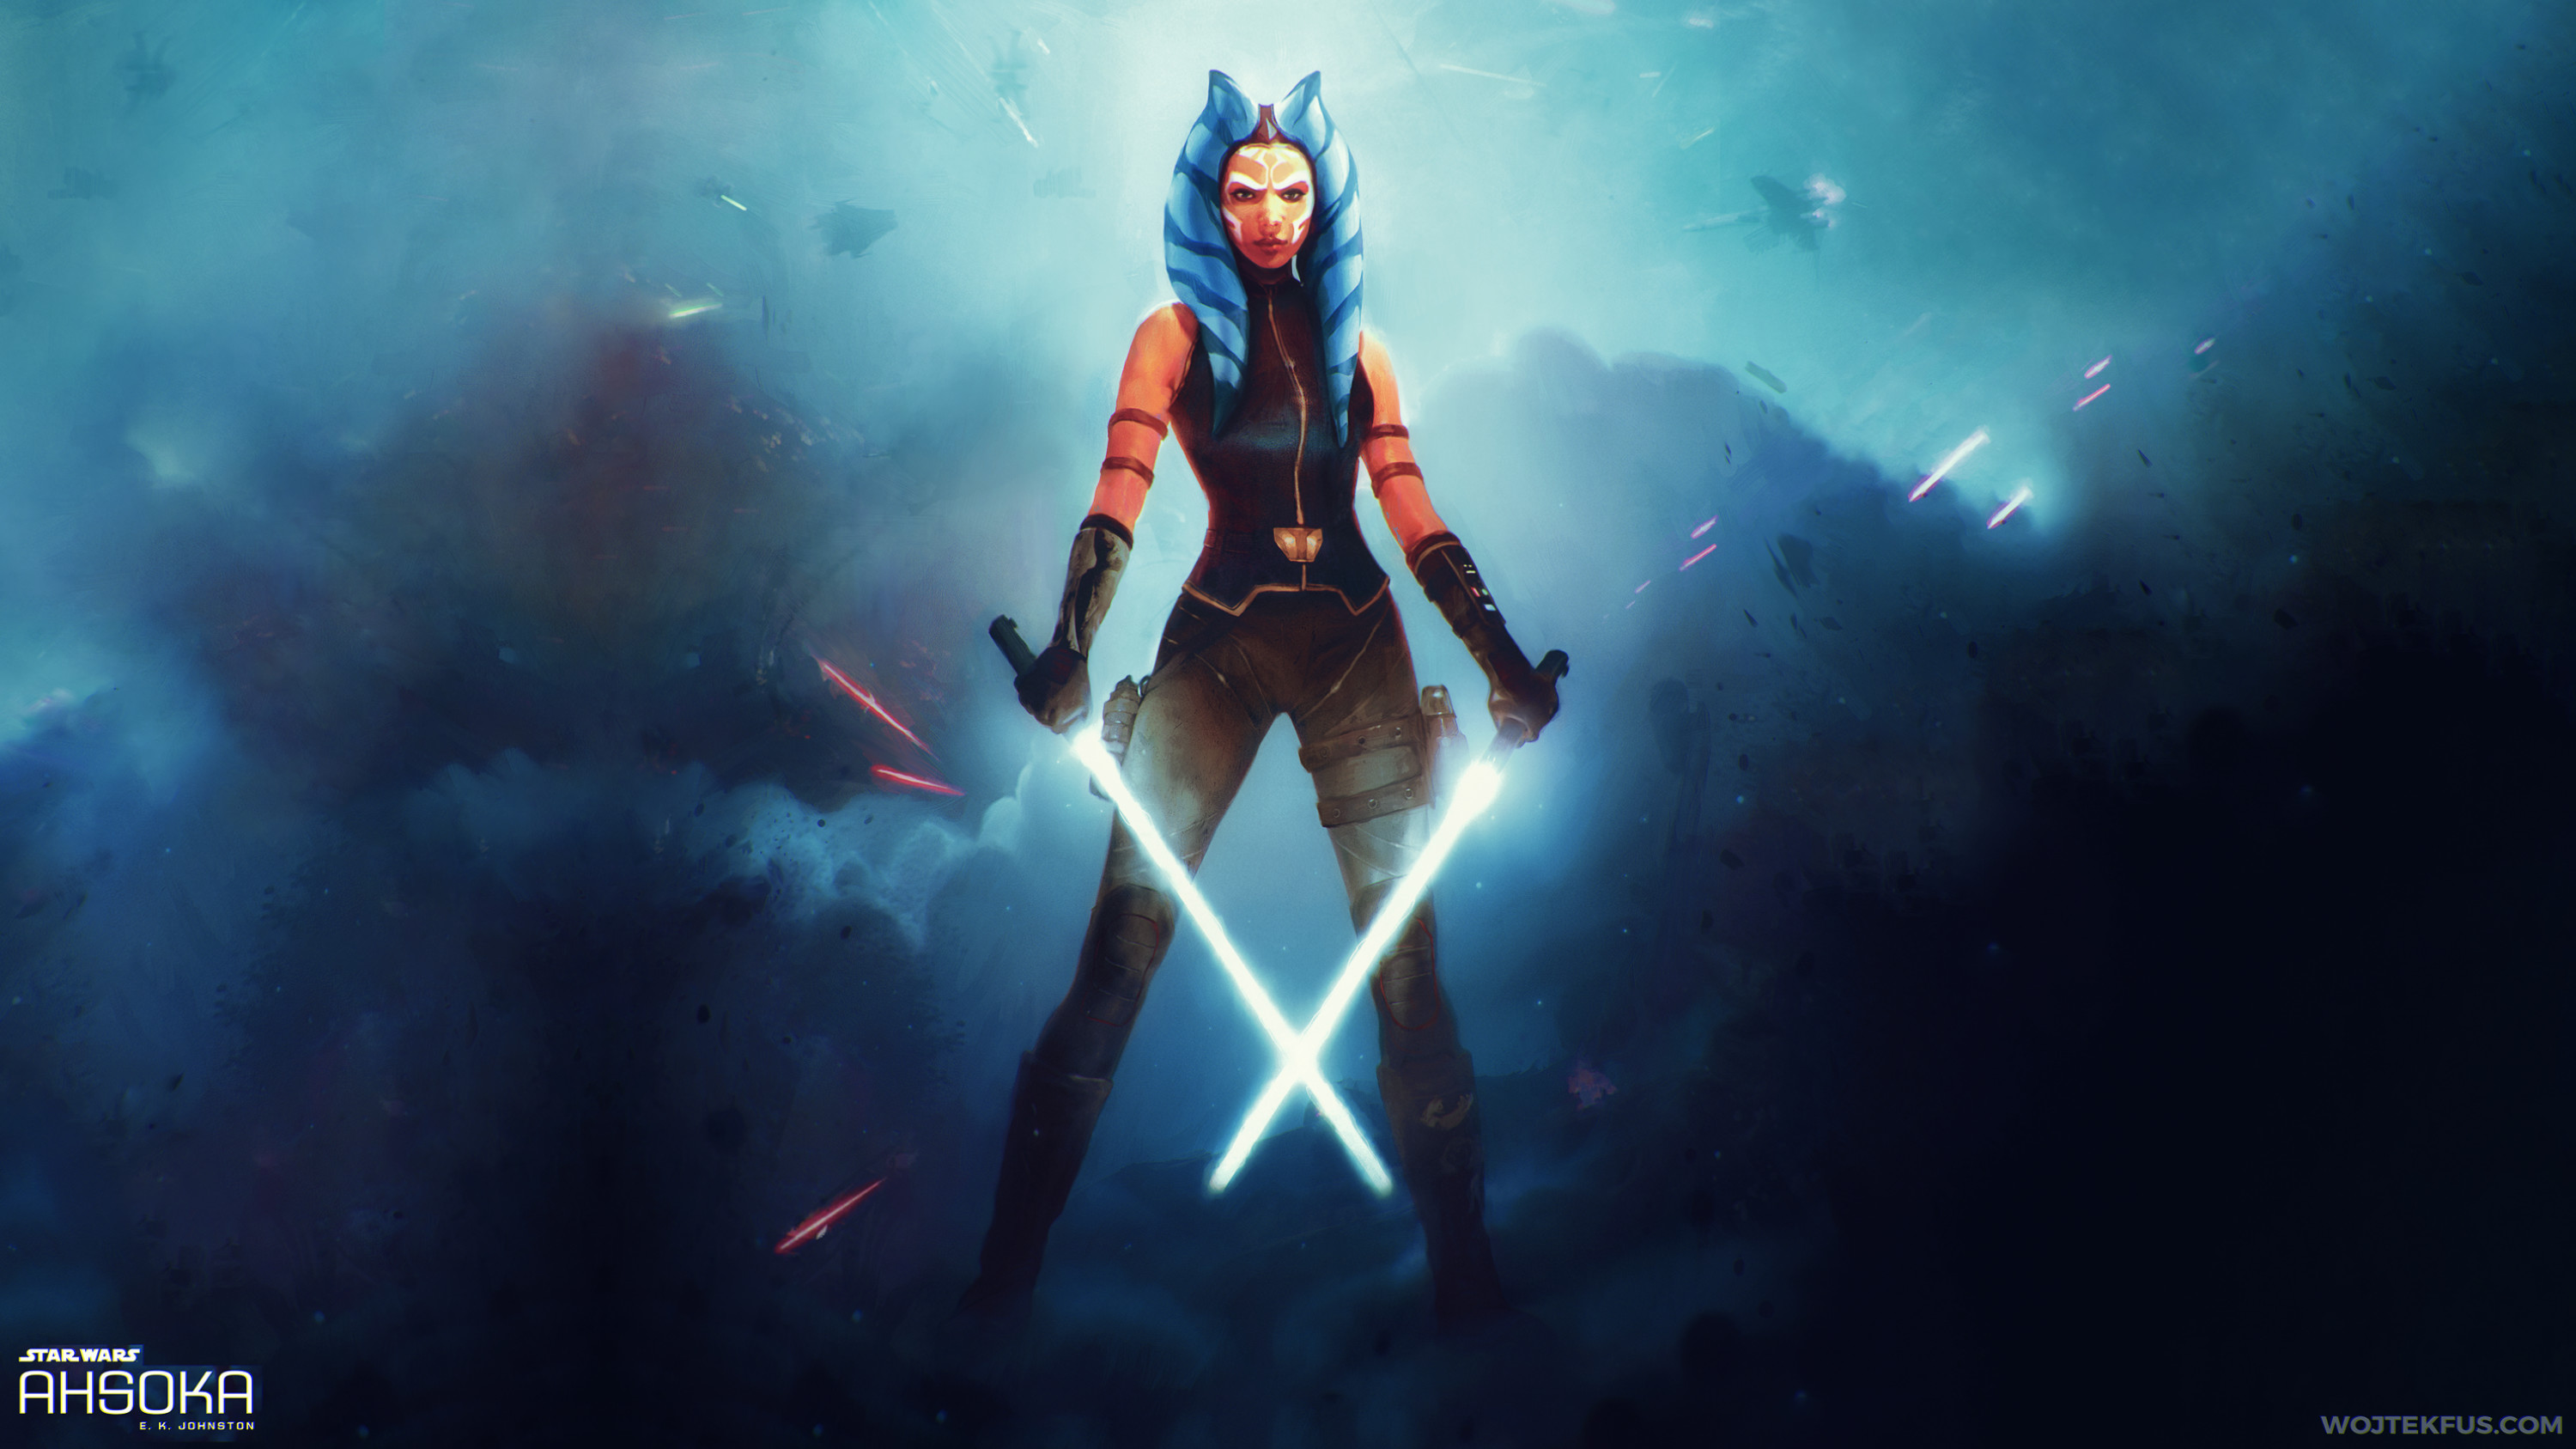 star wars rebels wallpaper,cg artwork,fictional character,screenshot,graphic design,pc game